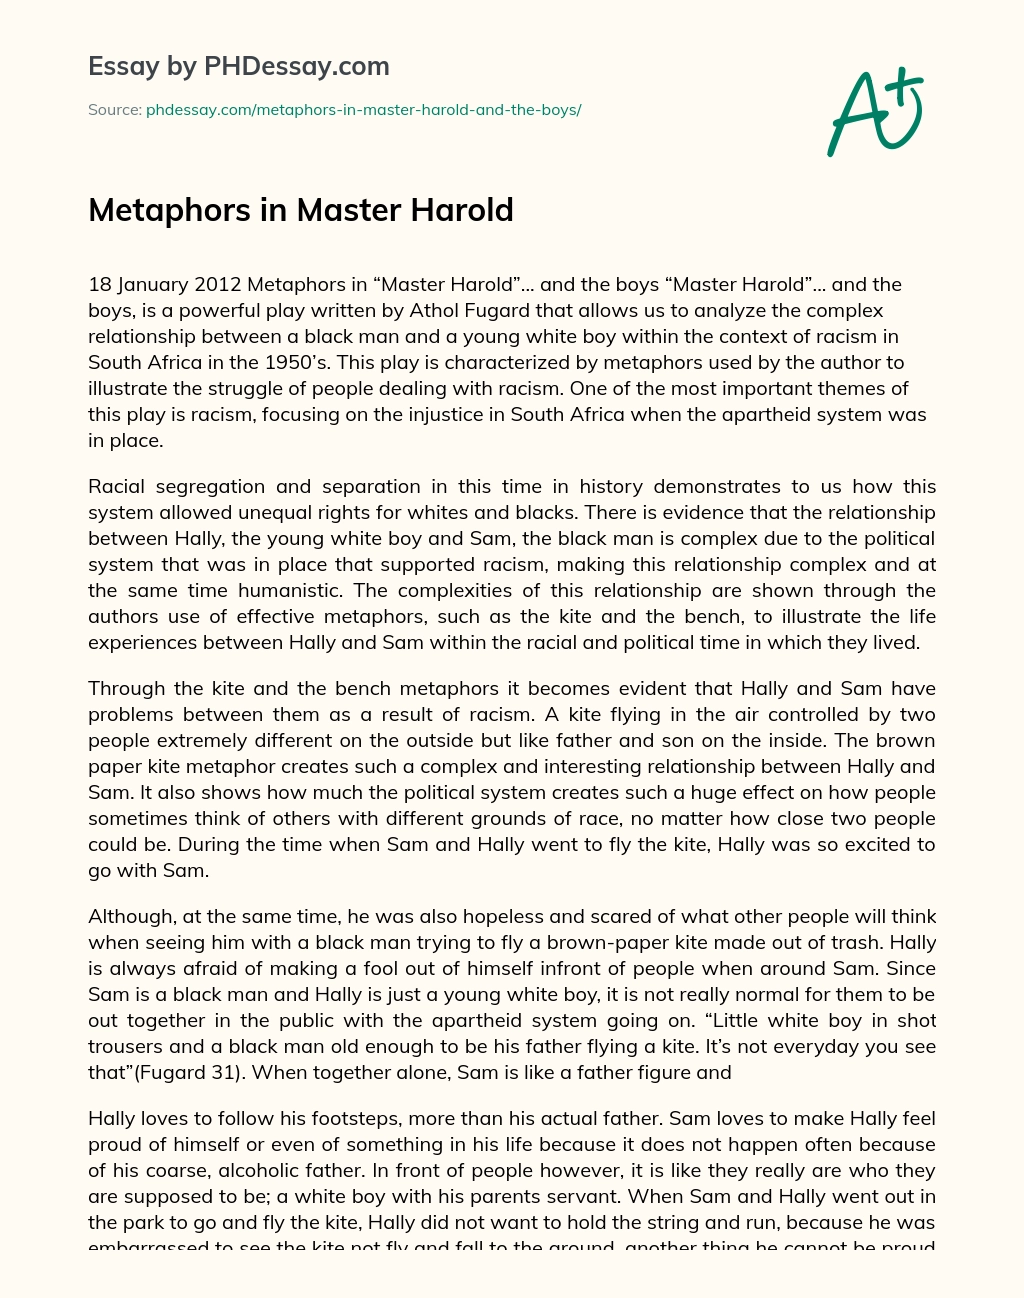 Metaphors in Master Harold essay